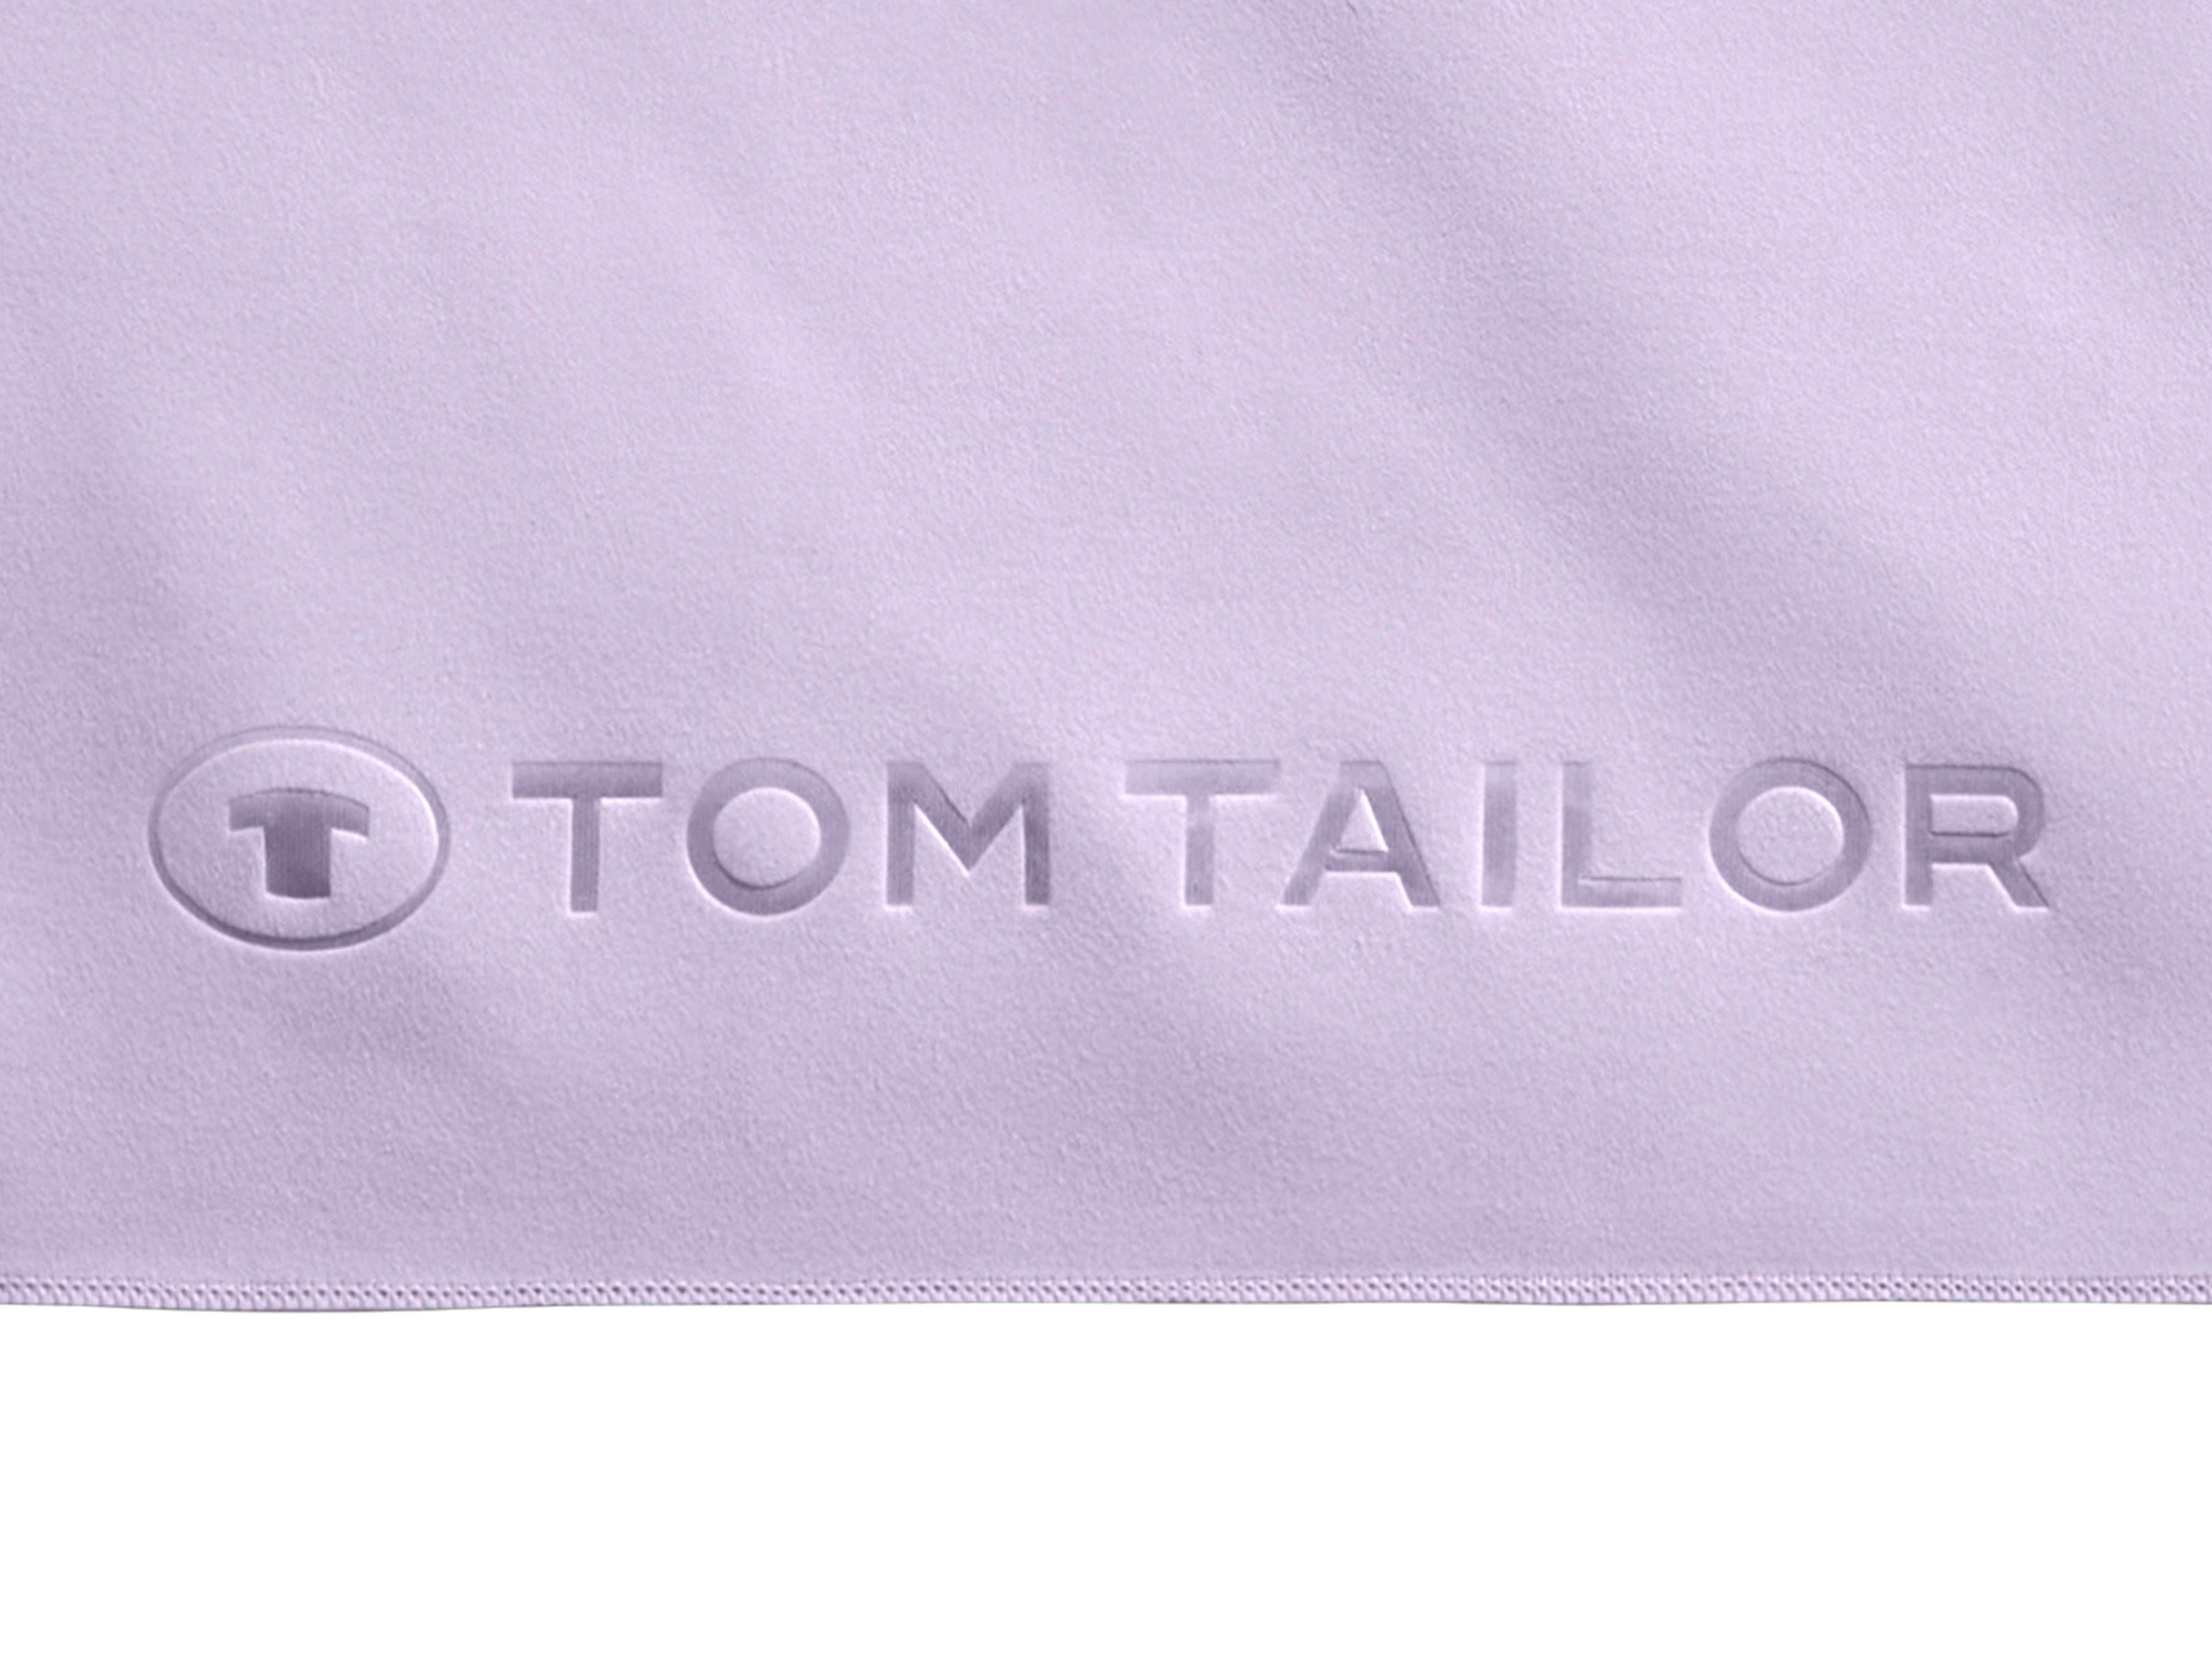 schnell trocknend, Duschtuch weiche HOME TOM Logo TAILOR Qualität, gewebte uni, mit lila Ware (1-St), Fitness, dünne, feinfädige,